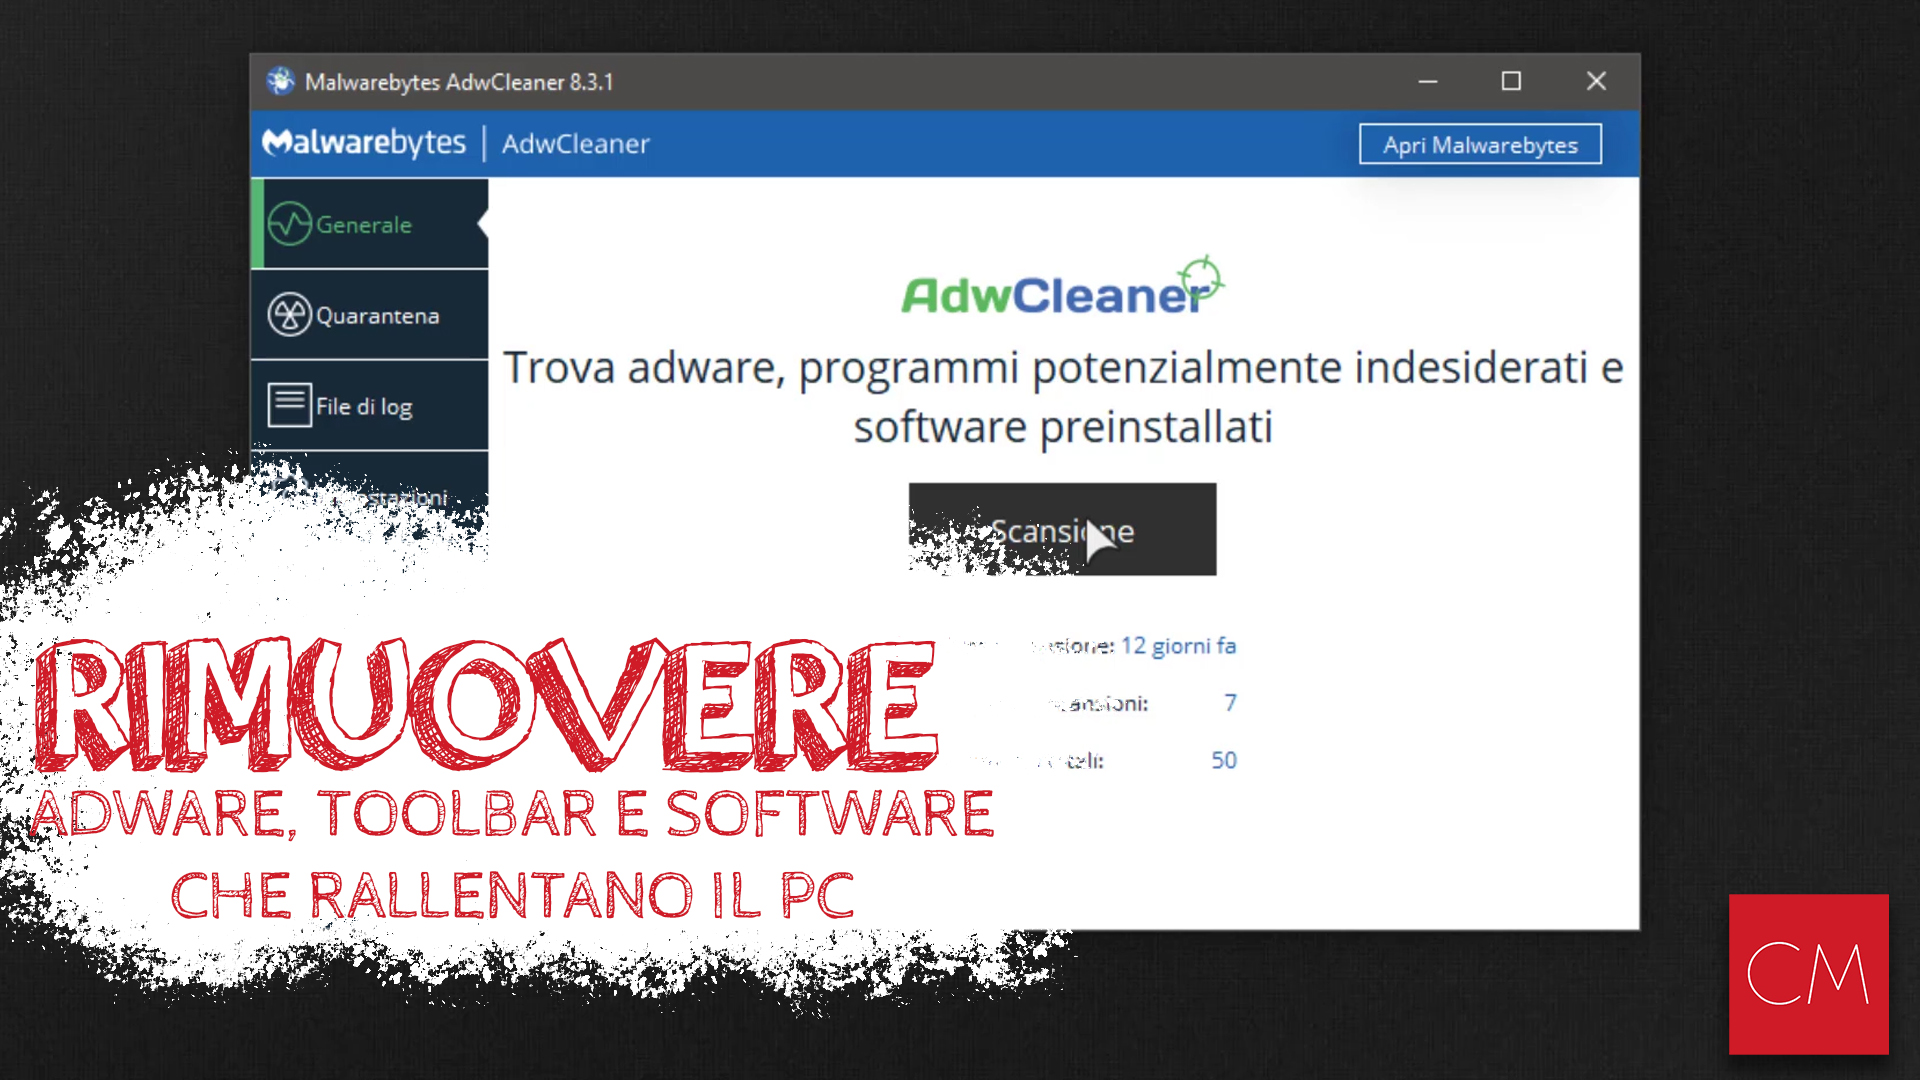 Rimuovere Adware Toolbar e Programmi che rallentano il PC